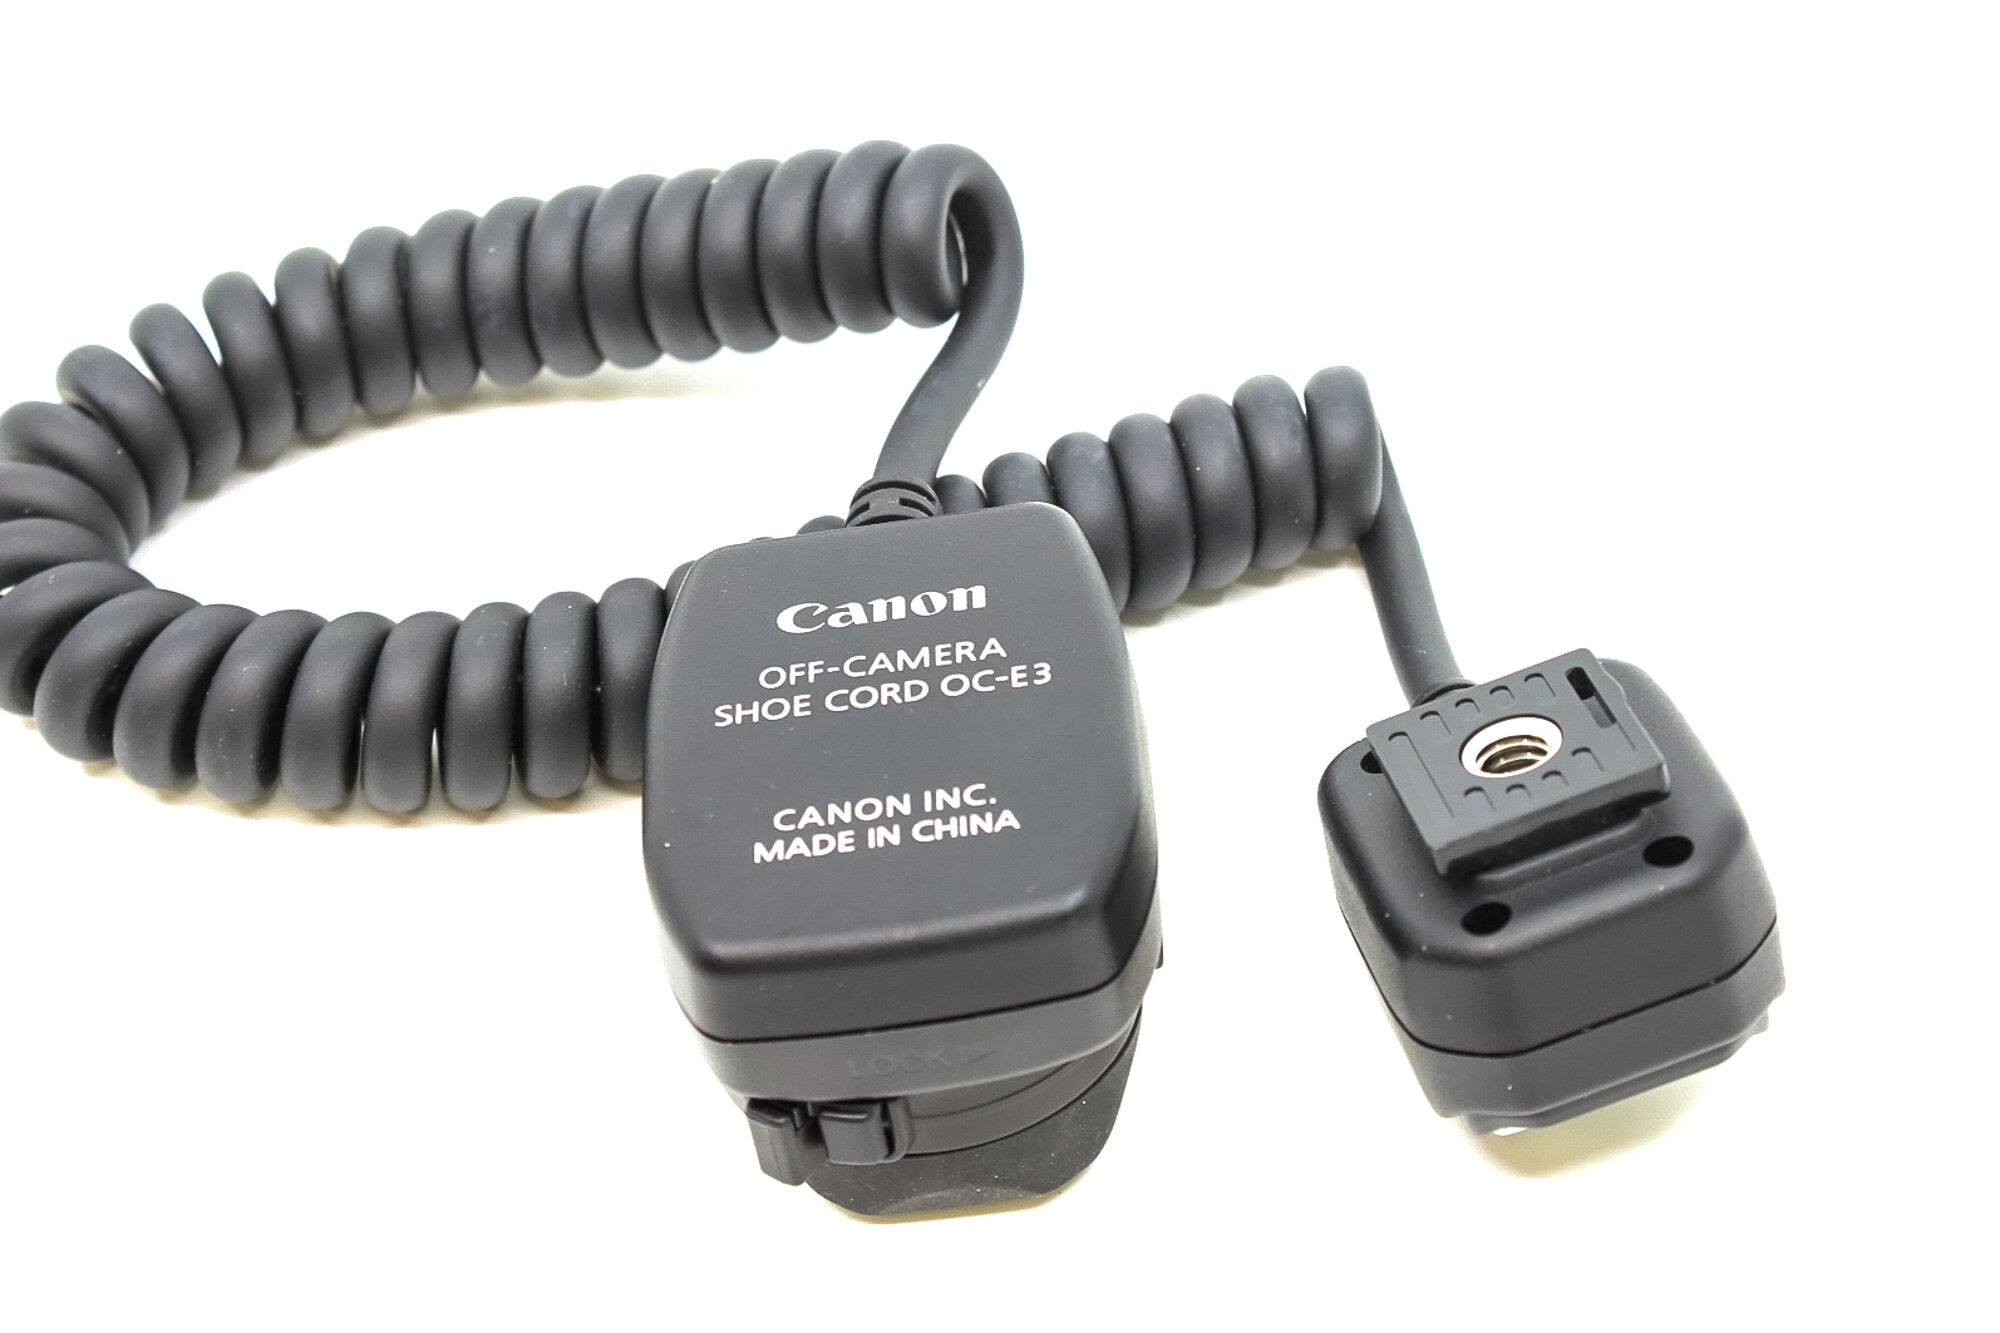 canon oc-e3 off-camera shoe cord (condition: like new)